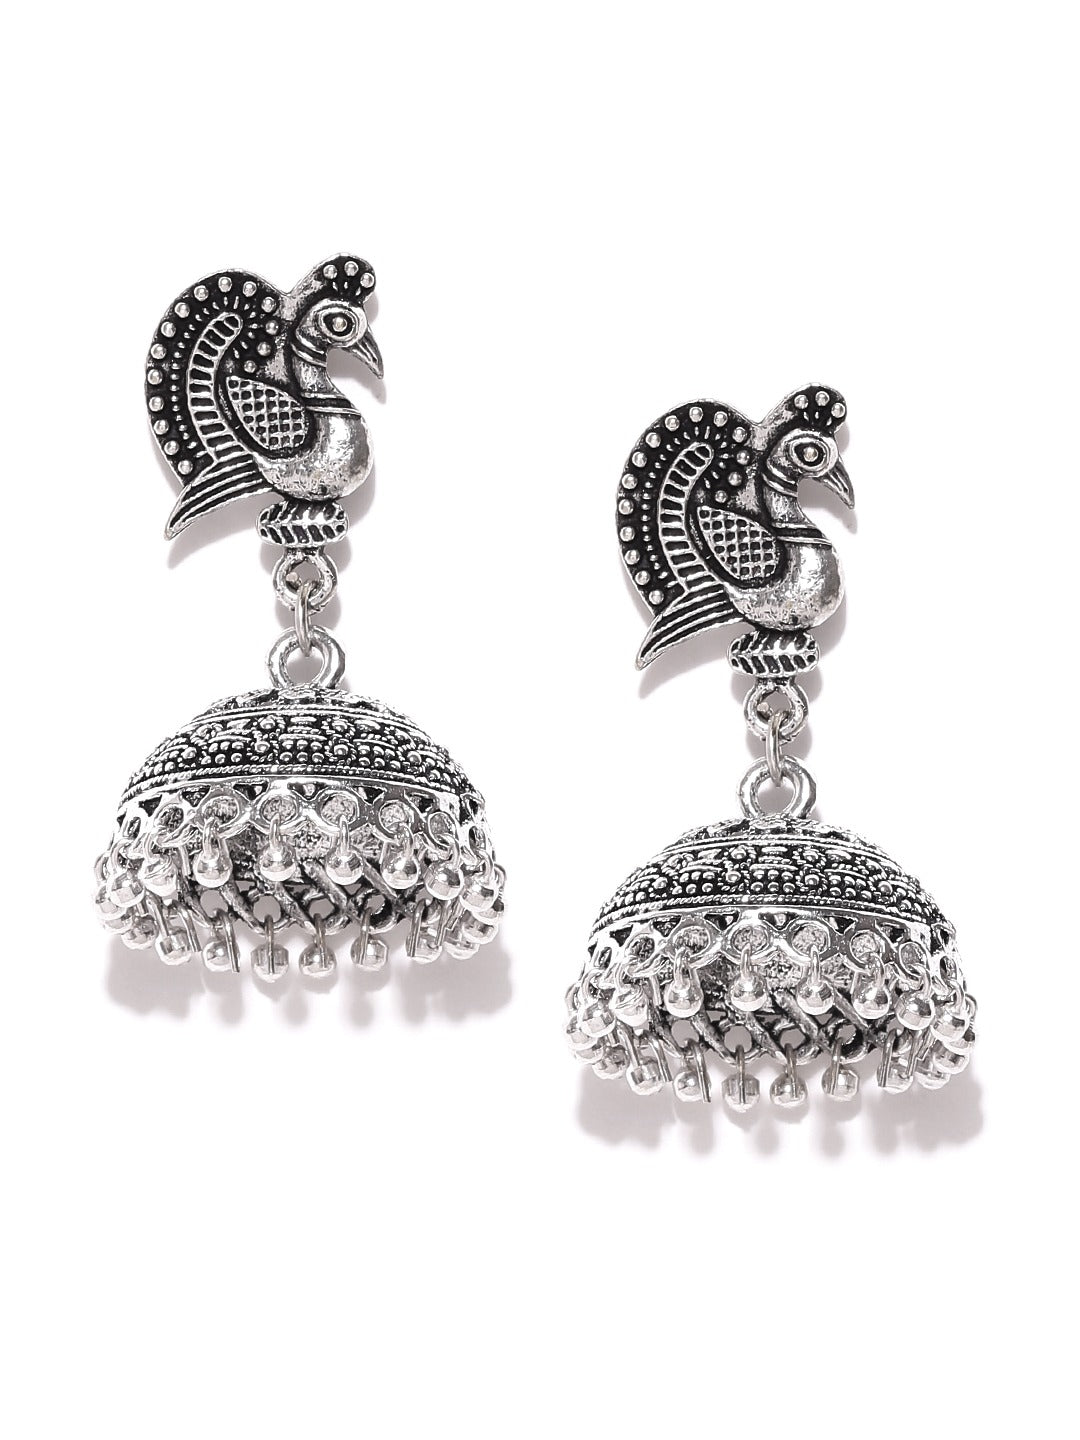 Peacock Inspired German Silver Oxidised Handmade Jhumki Earrings